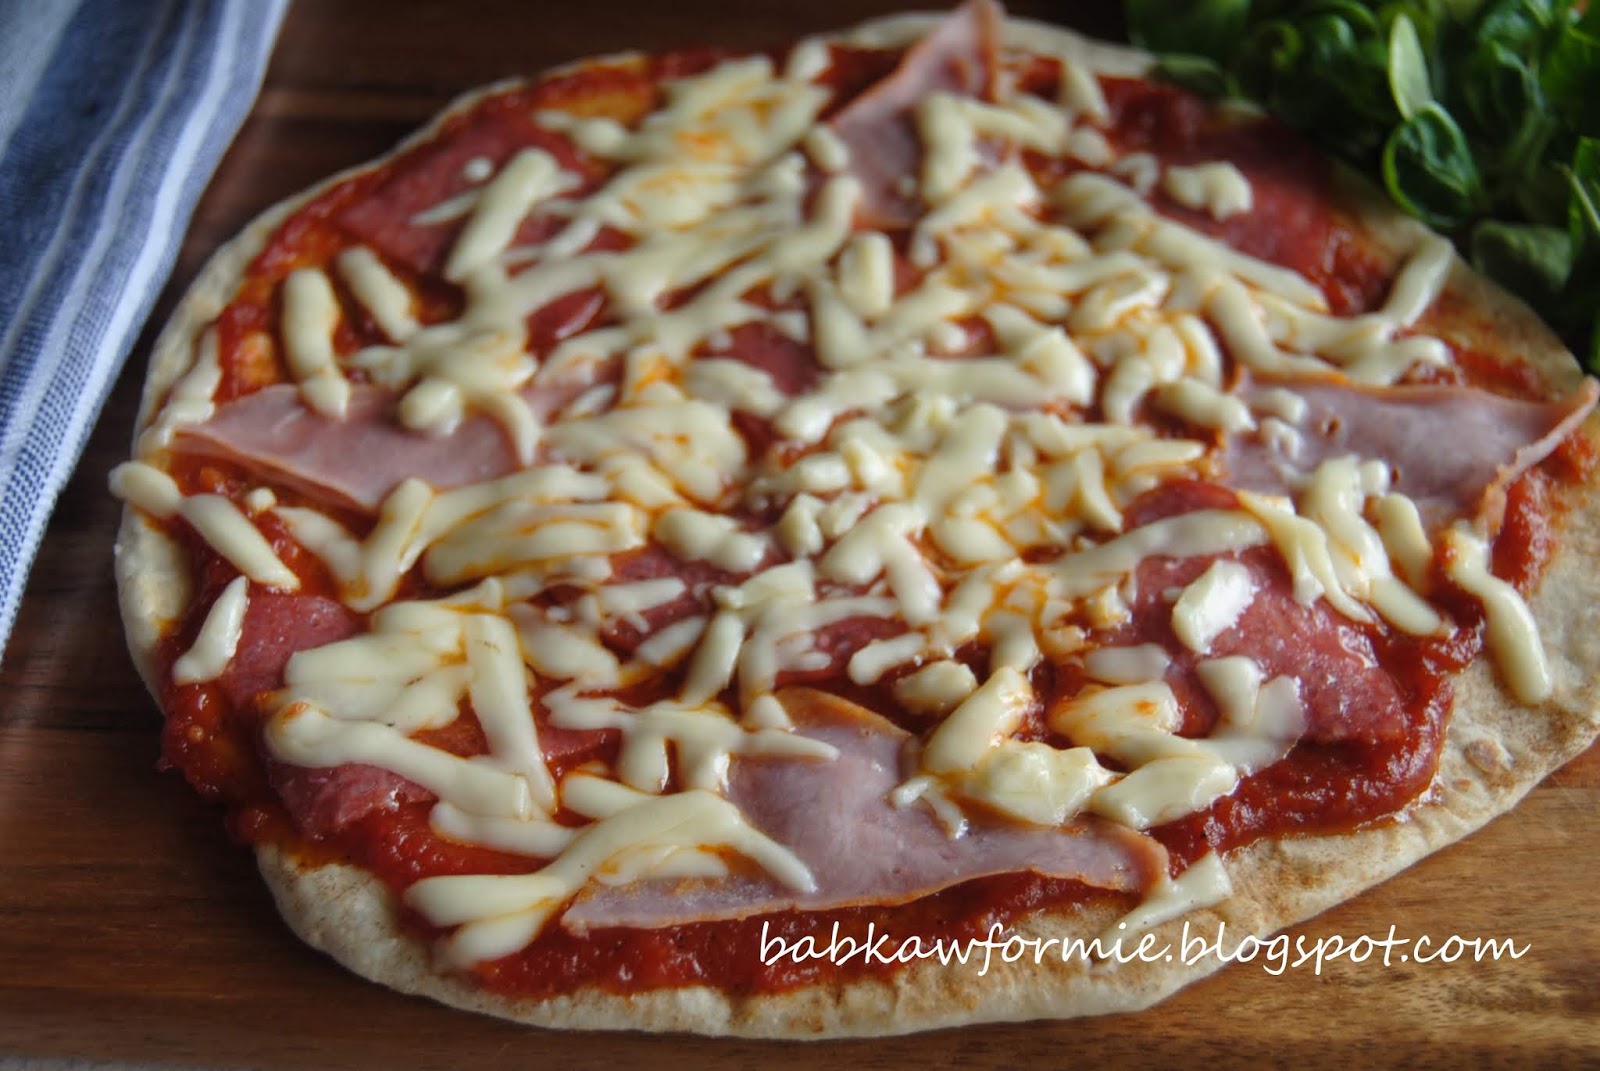 pizza z patelni - szybka kolacja babkawformie.blogspot.com